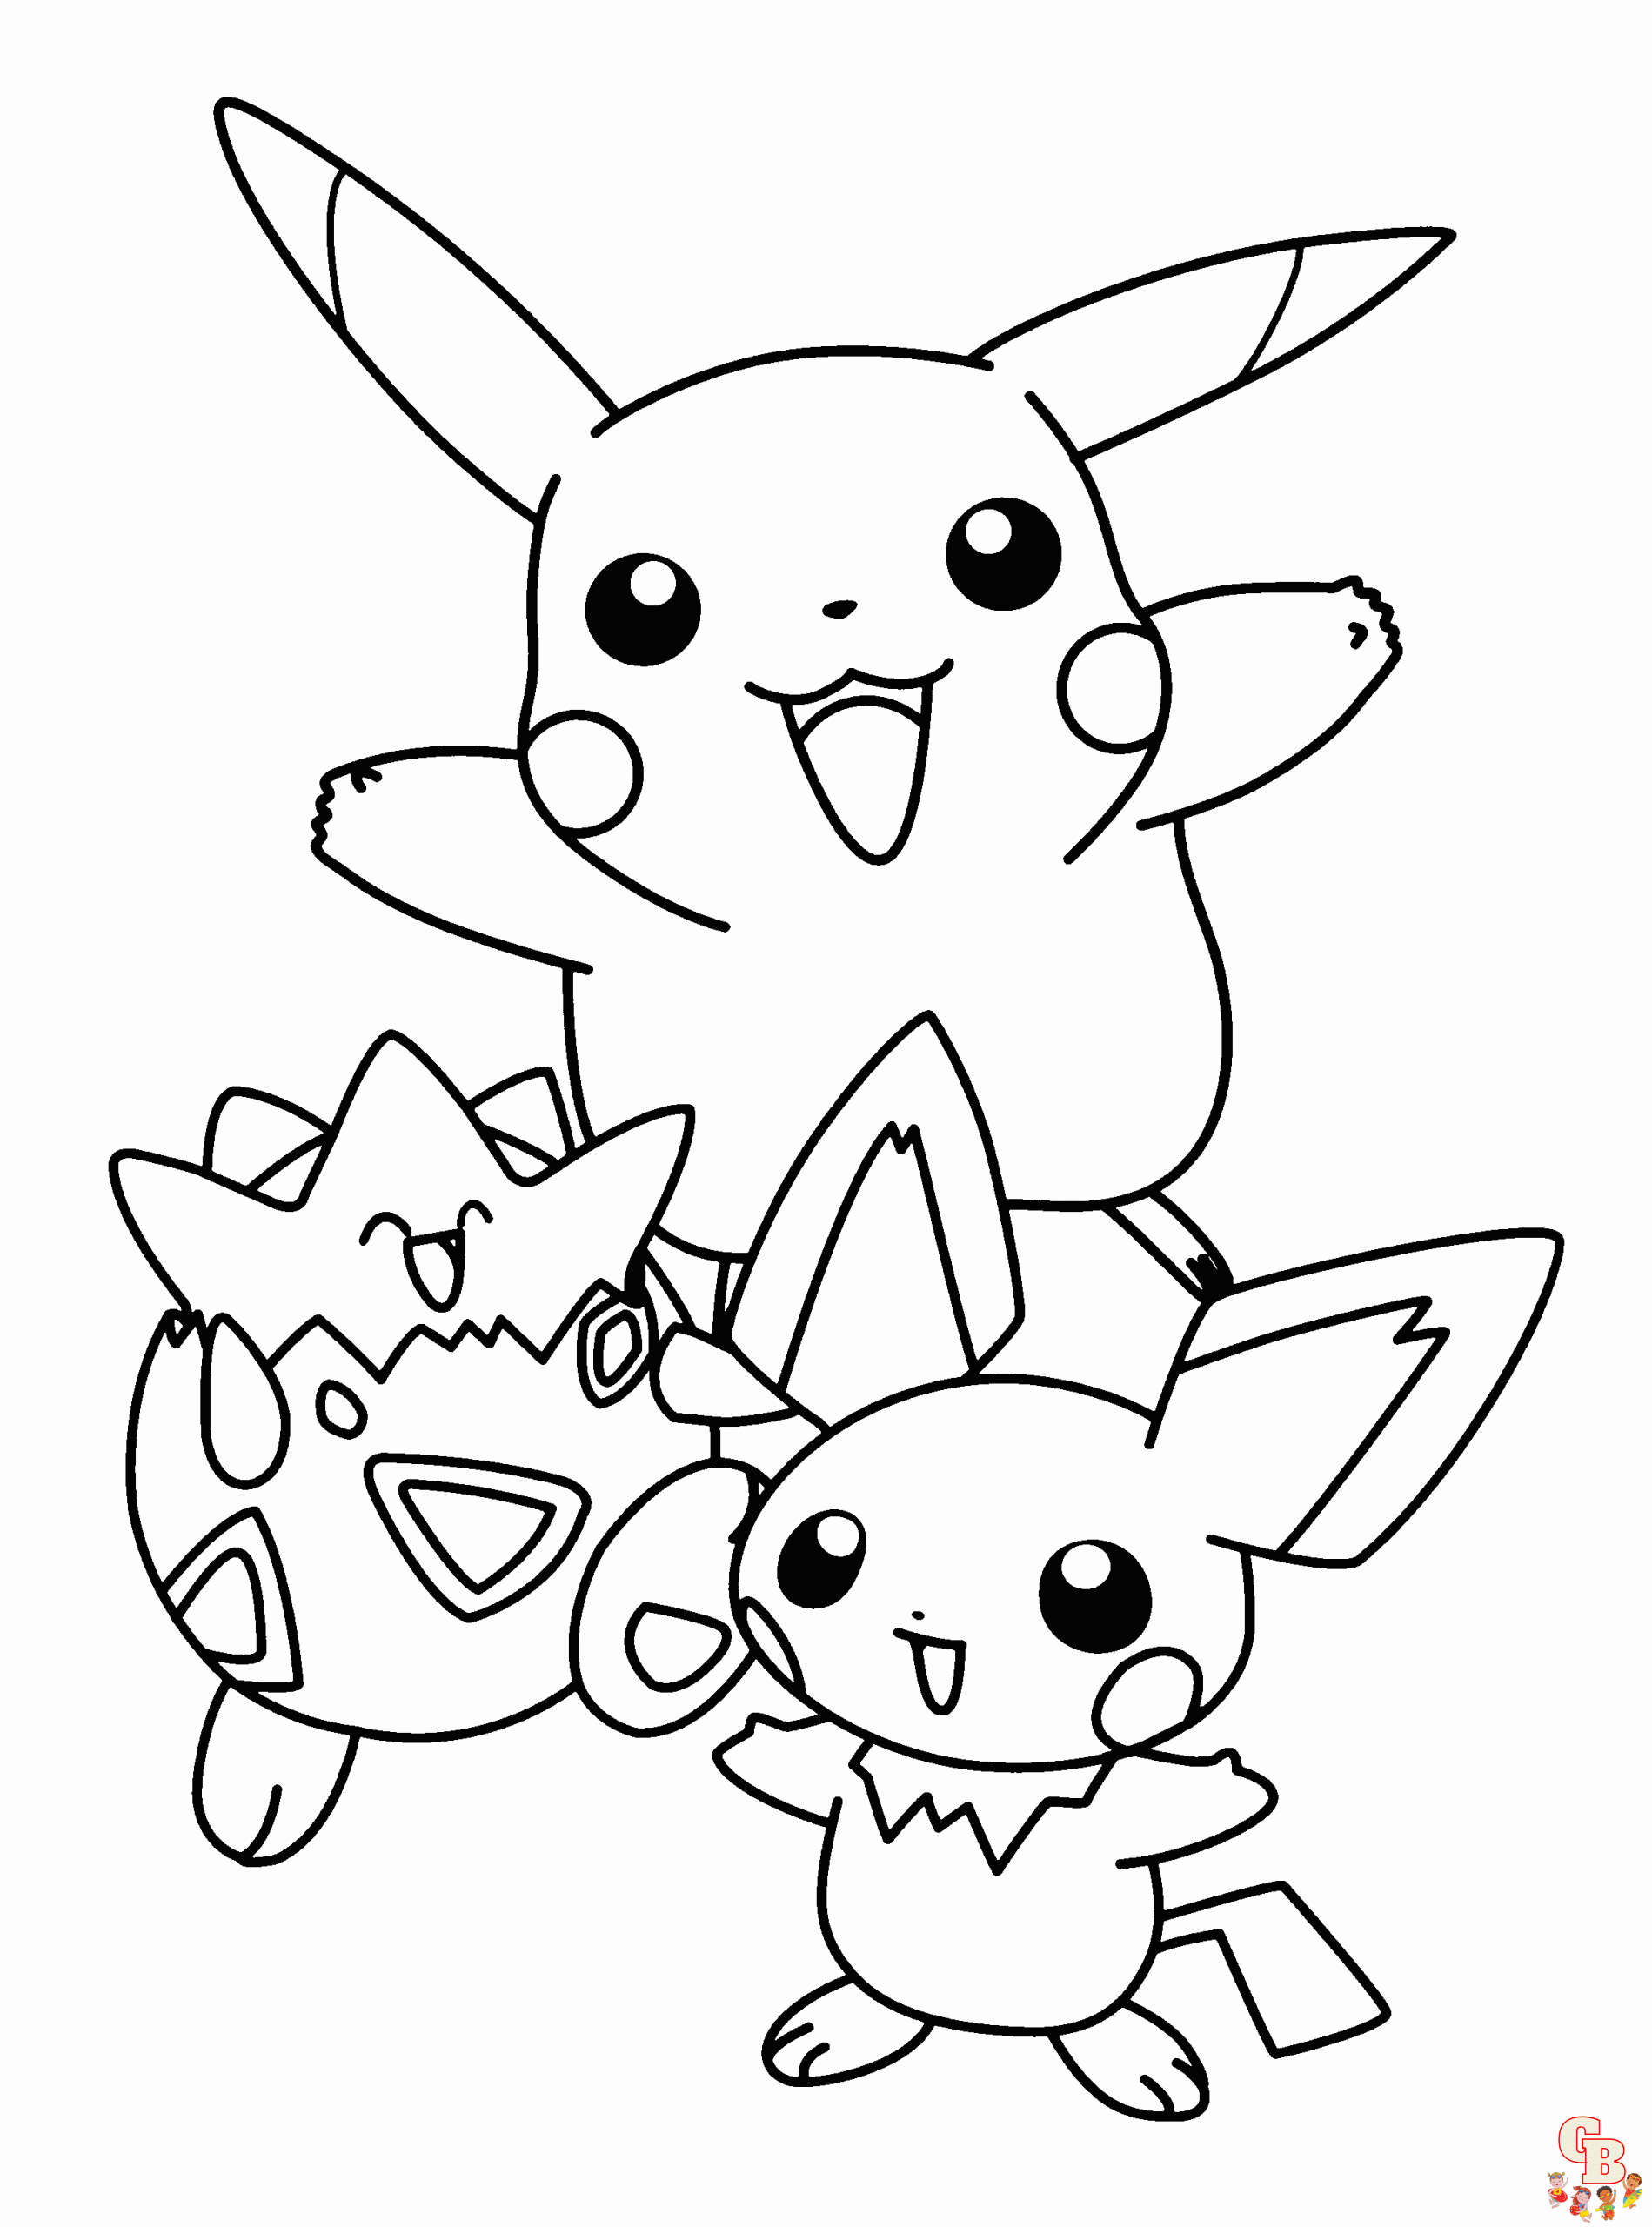 Coloração de Pokemon